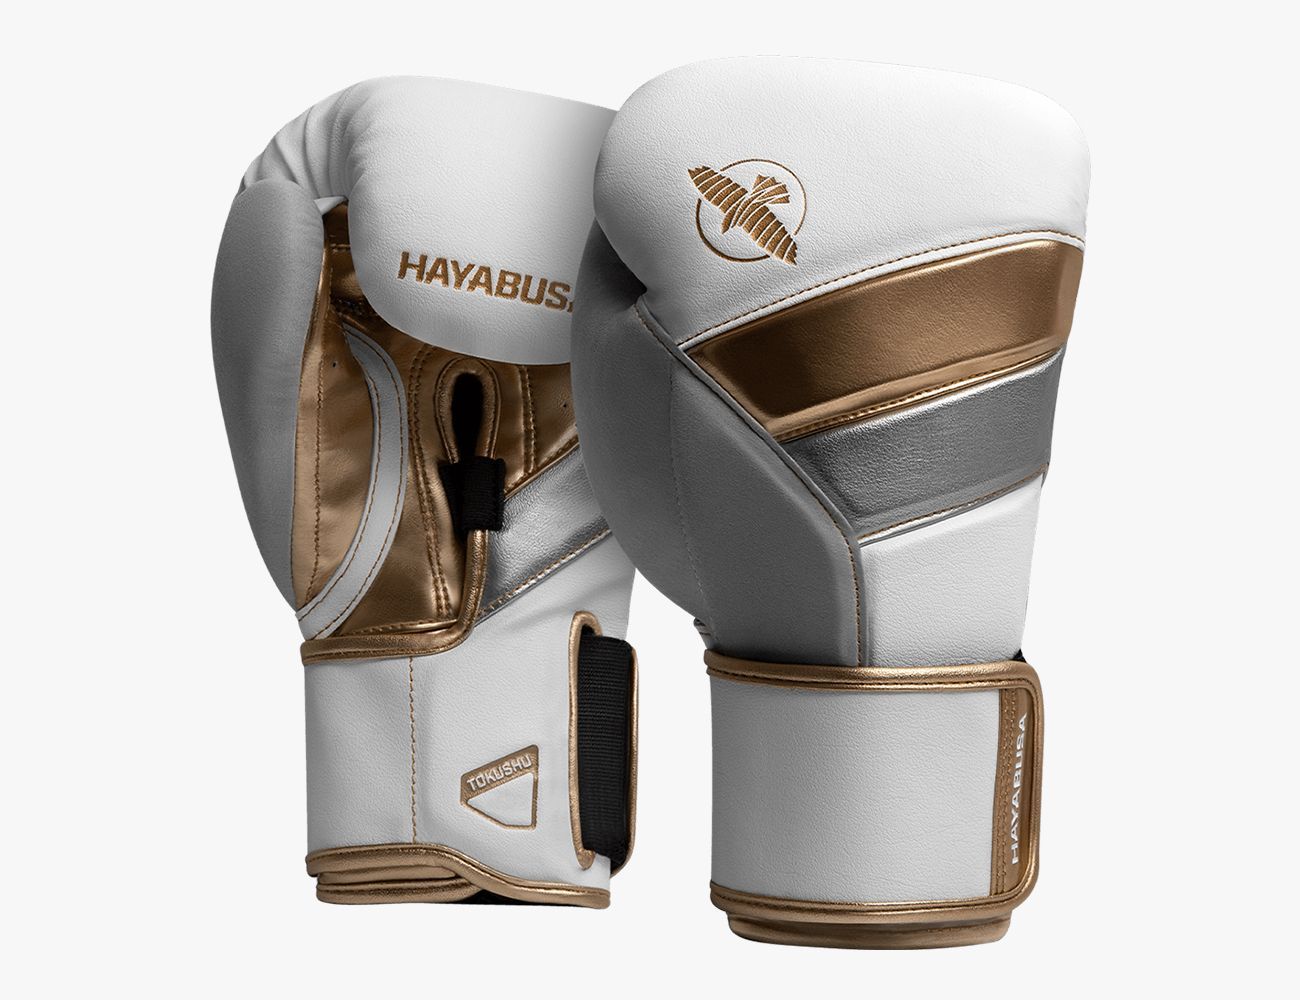 Vergelijkbaar Extractie binnenvallen The Best Boxing Gloves to Knock Out Your Next Workout